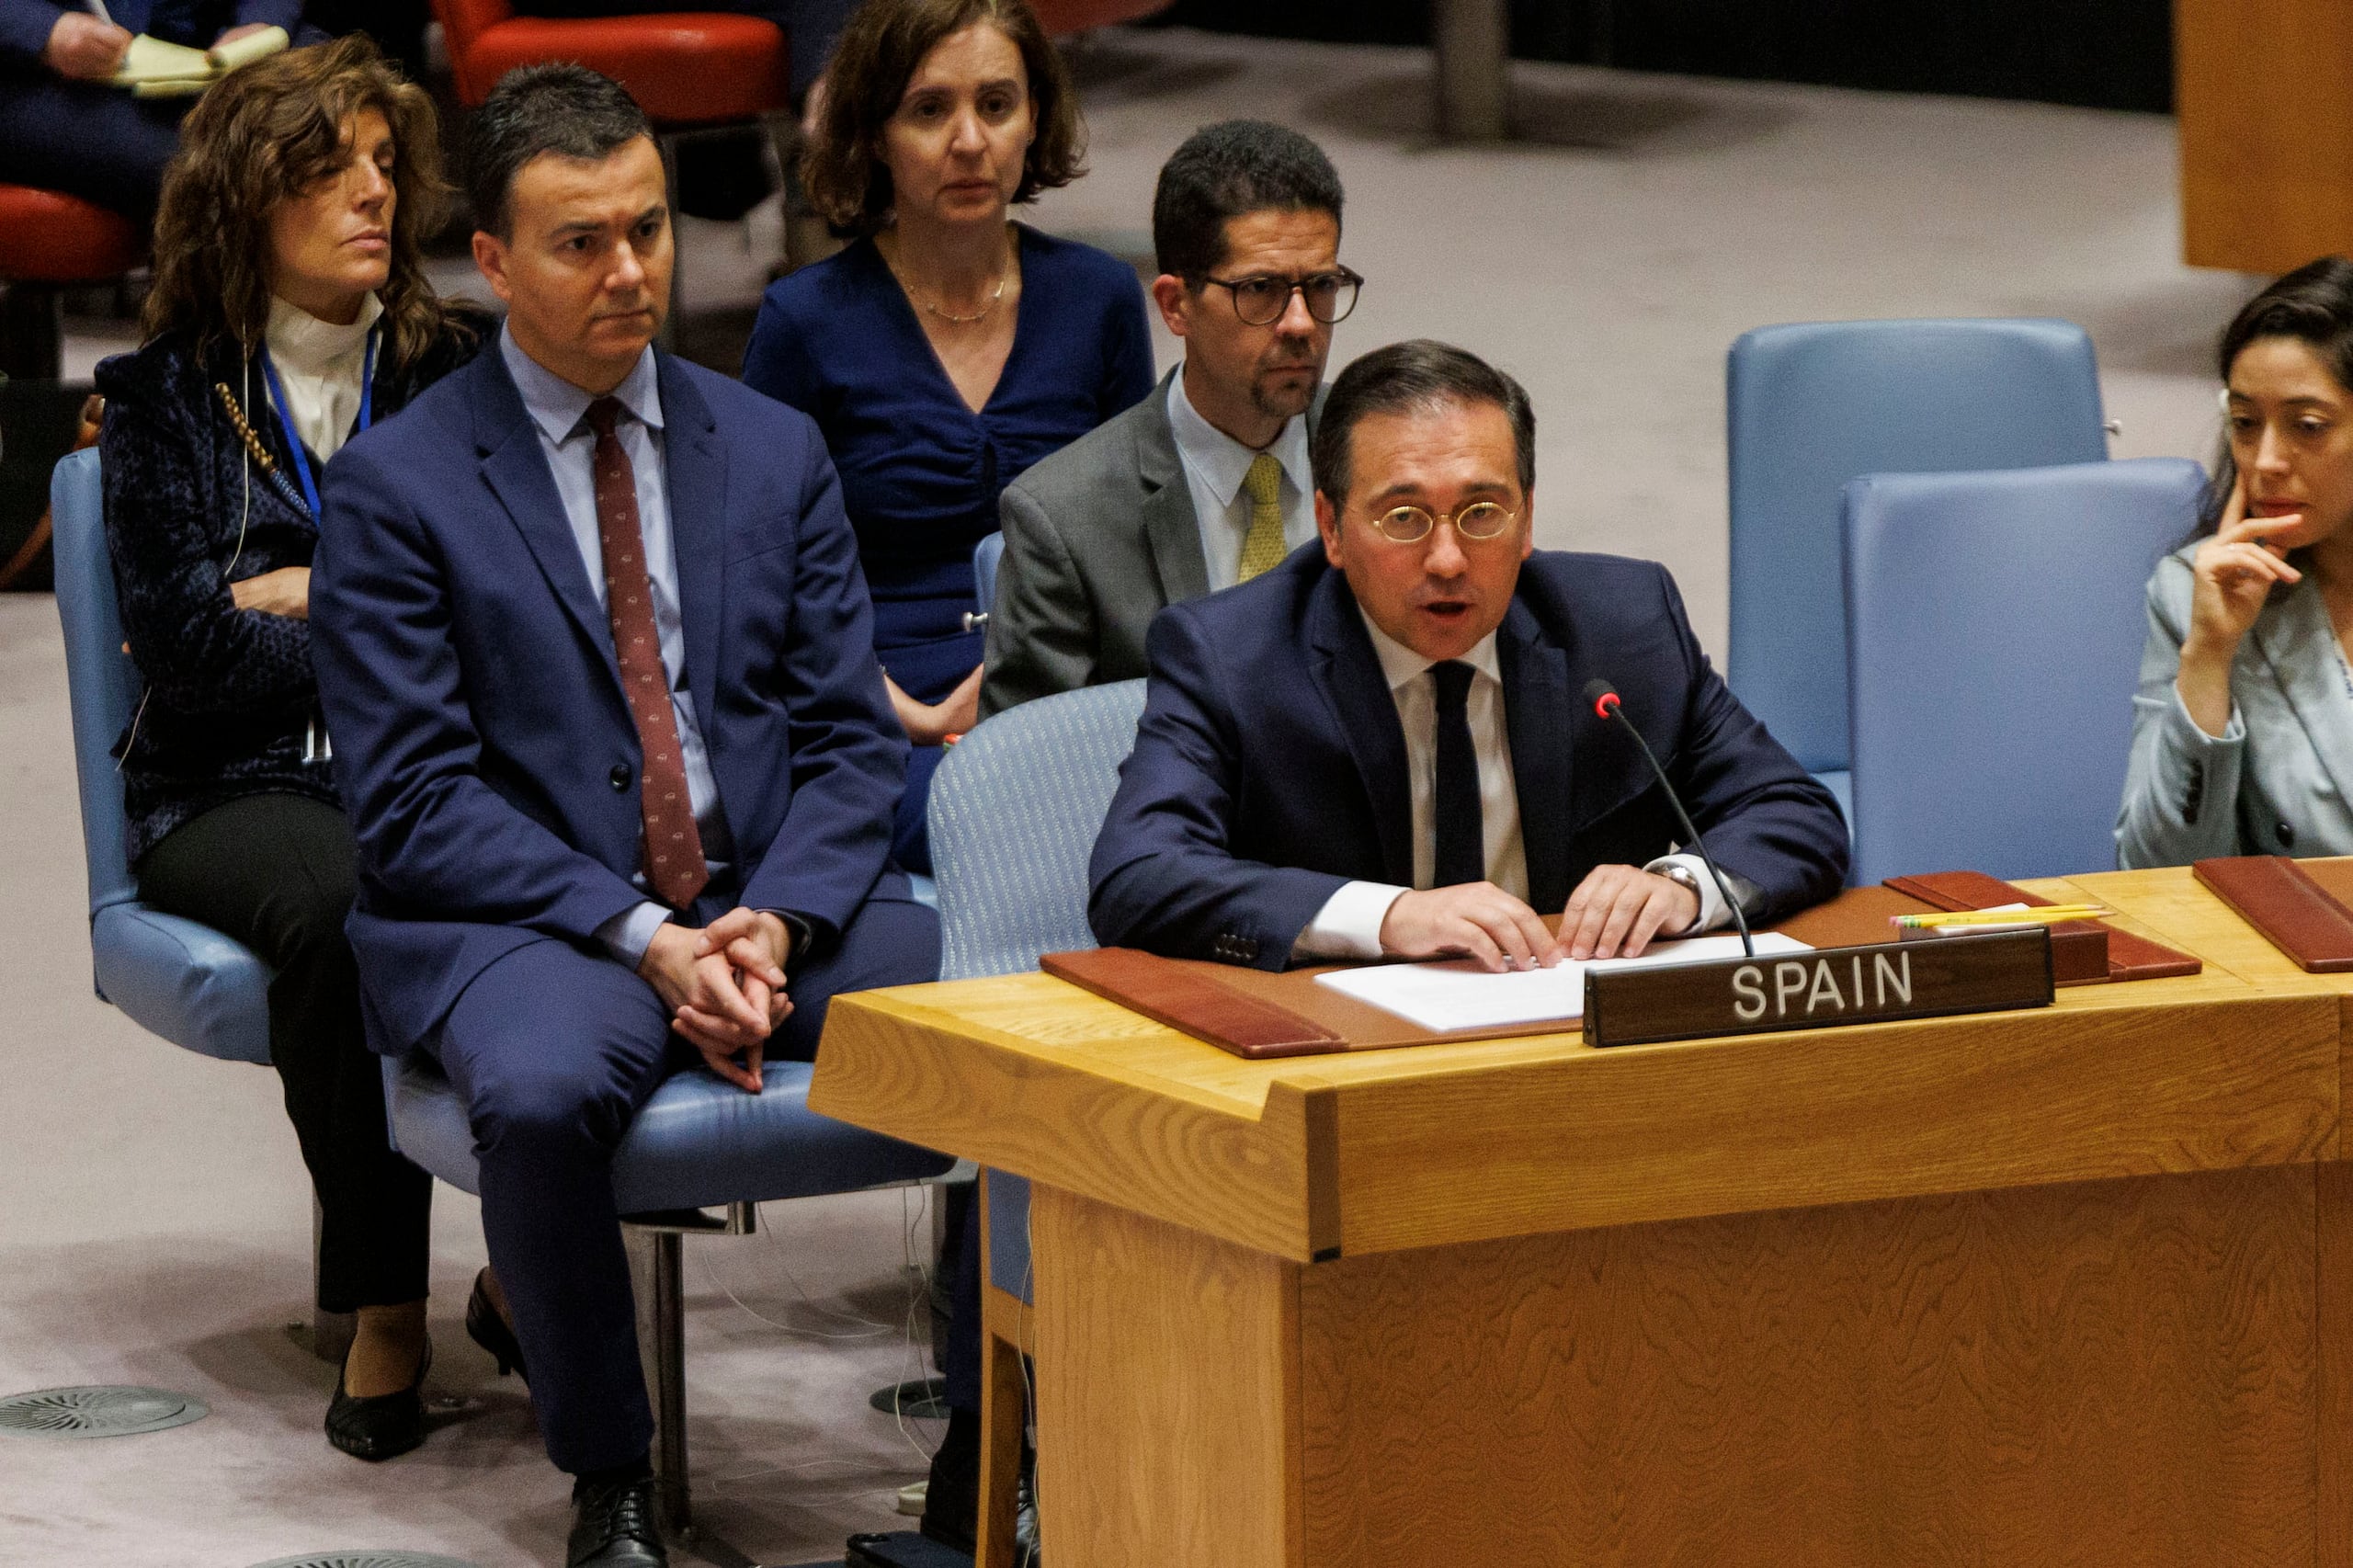 El ministro español de Exteriores, José Manuel Albares, habla durante una reunión del Consejo de Seguridad de Naciones Unidas. (EFE/Sarah Yenesel)